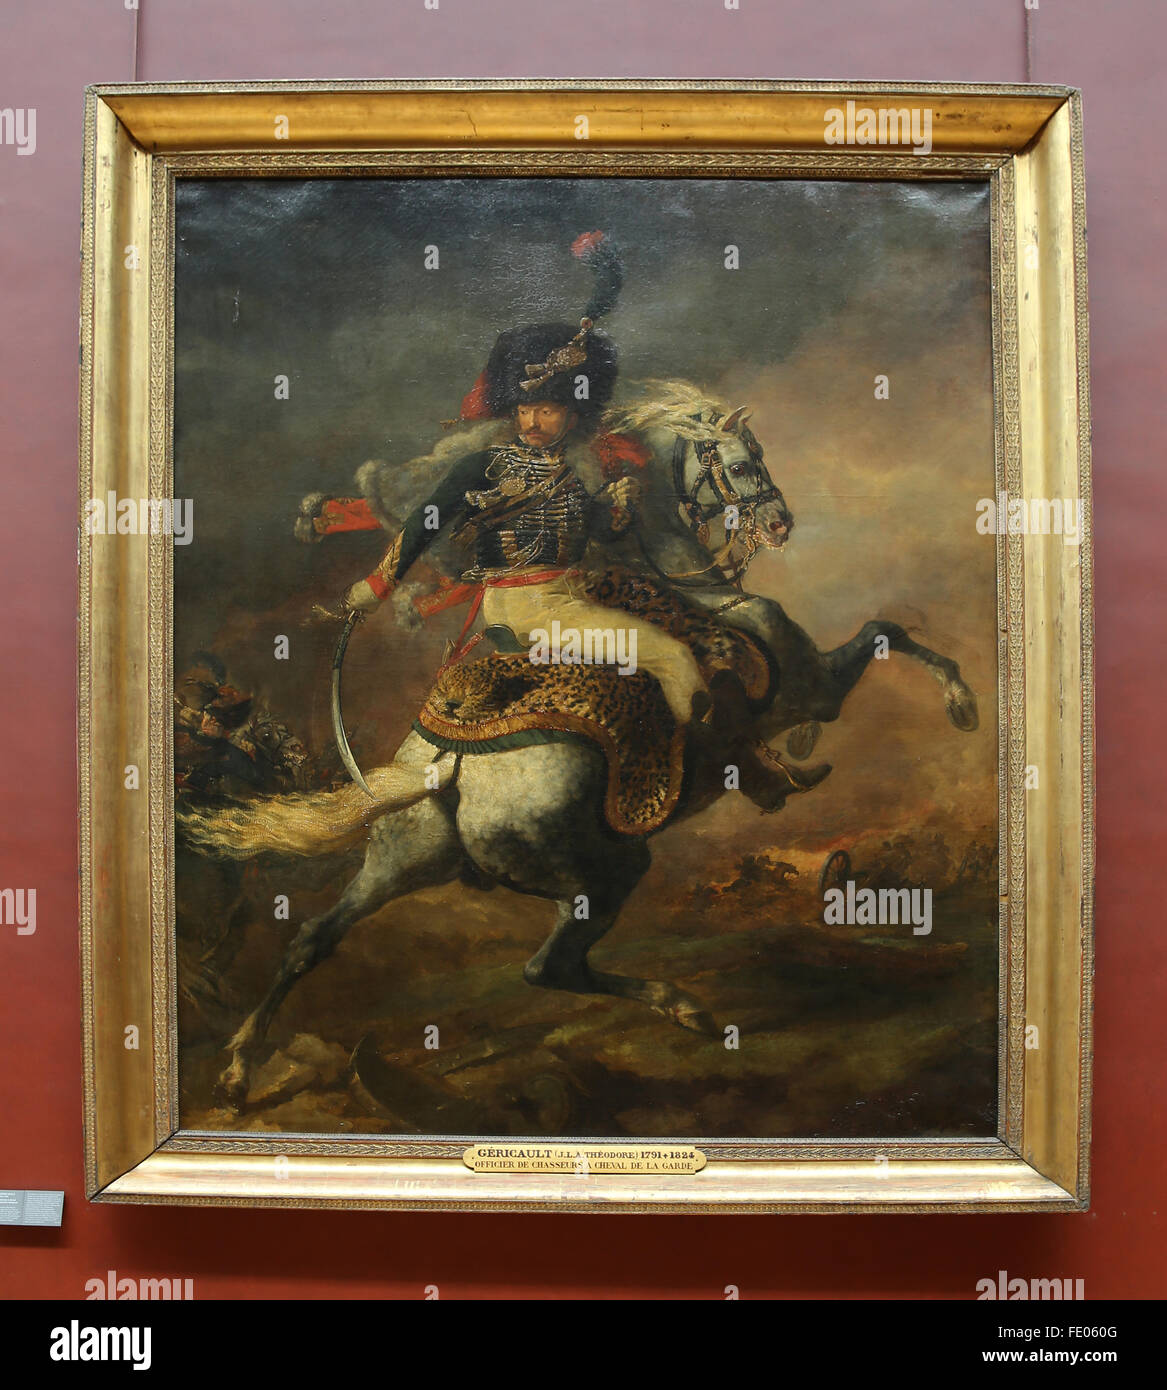 Die Aufladung Chasseur, 1812 französischen Malers Eugène Delacroix (1798-1863). Öl auf Leinwand. Louvre-Museum, Paris, Frankreich. Stockfoto